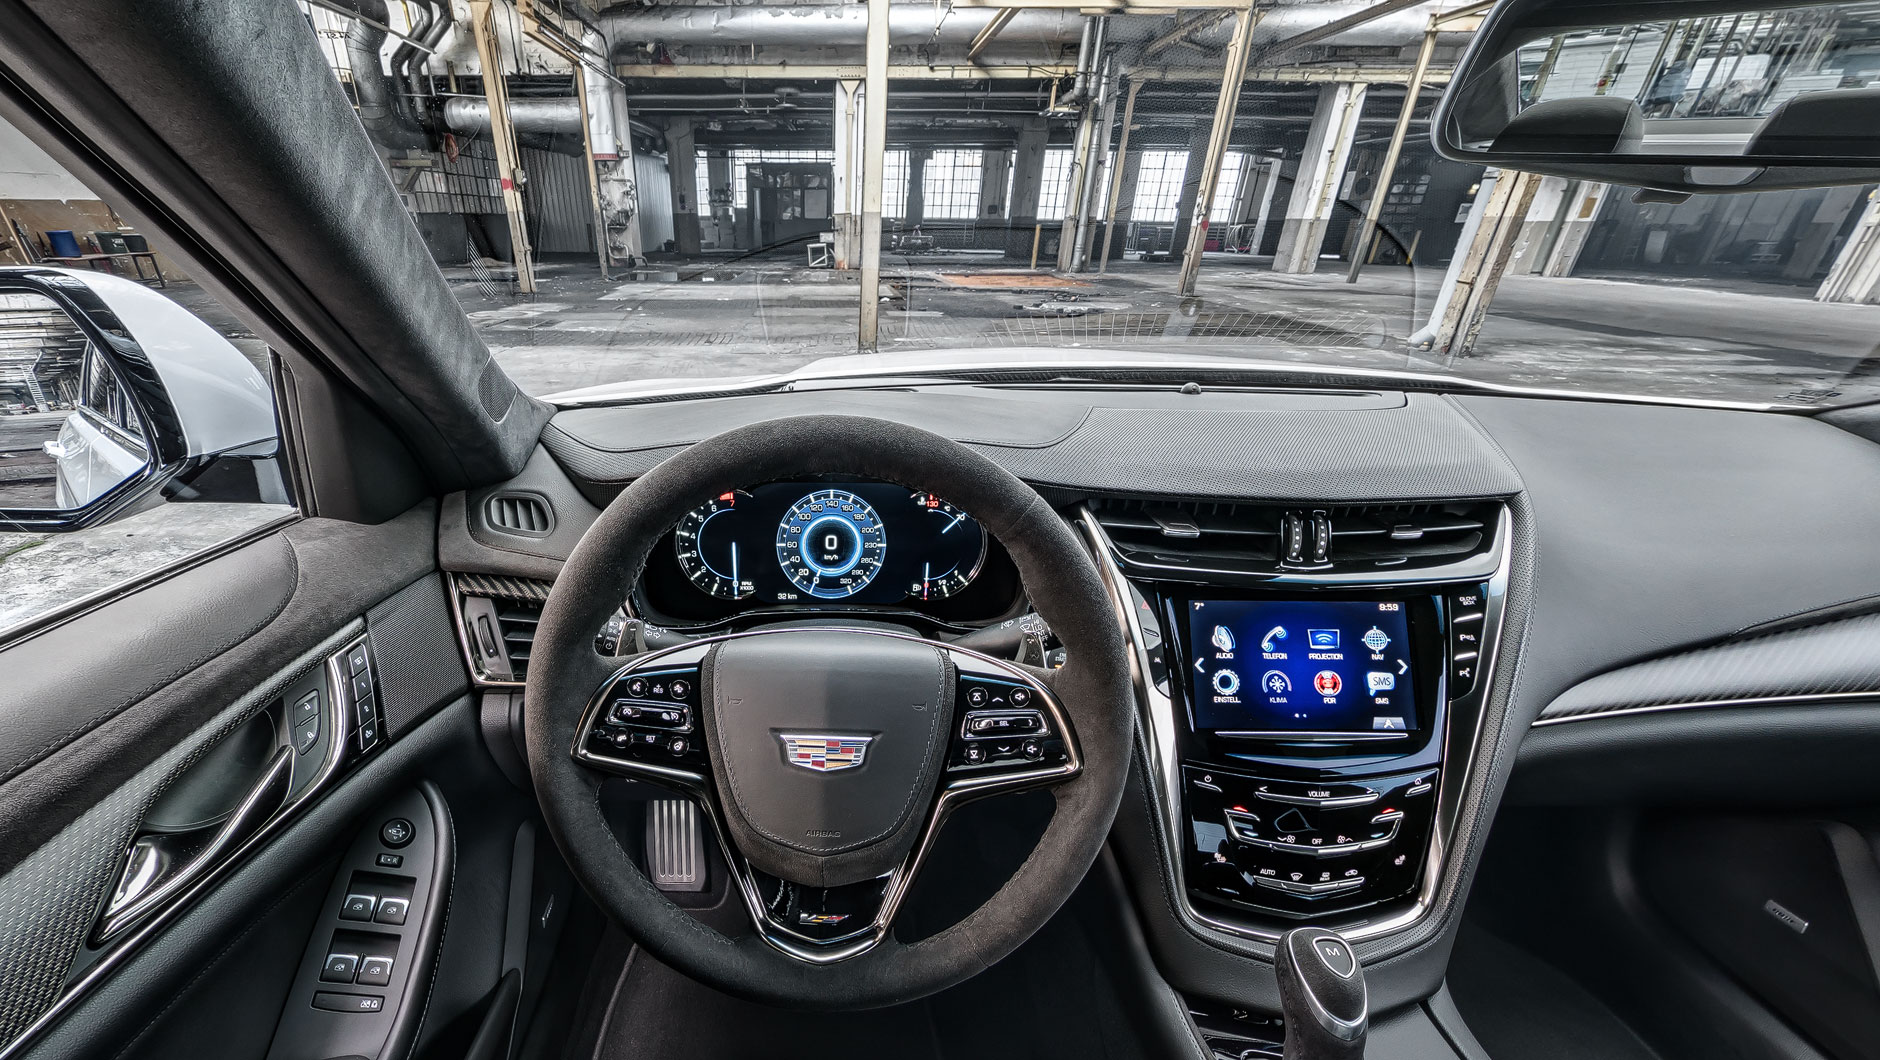 360-Grad-Bilder vom Interior verschiedener Fahrzeuge (Audi, Mercedes, Kia,  Cadillac und Chevrolet